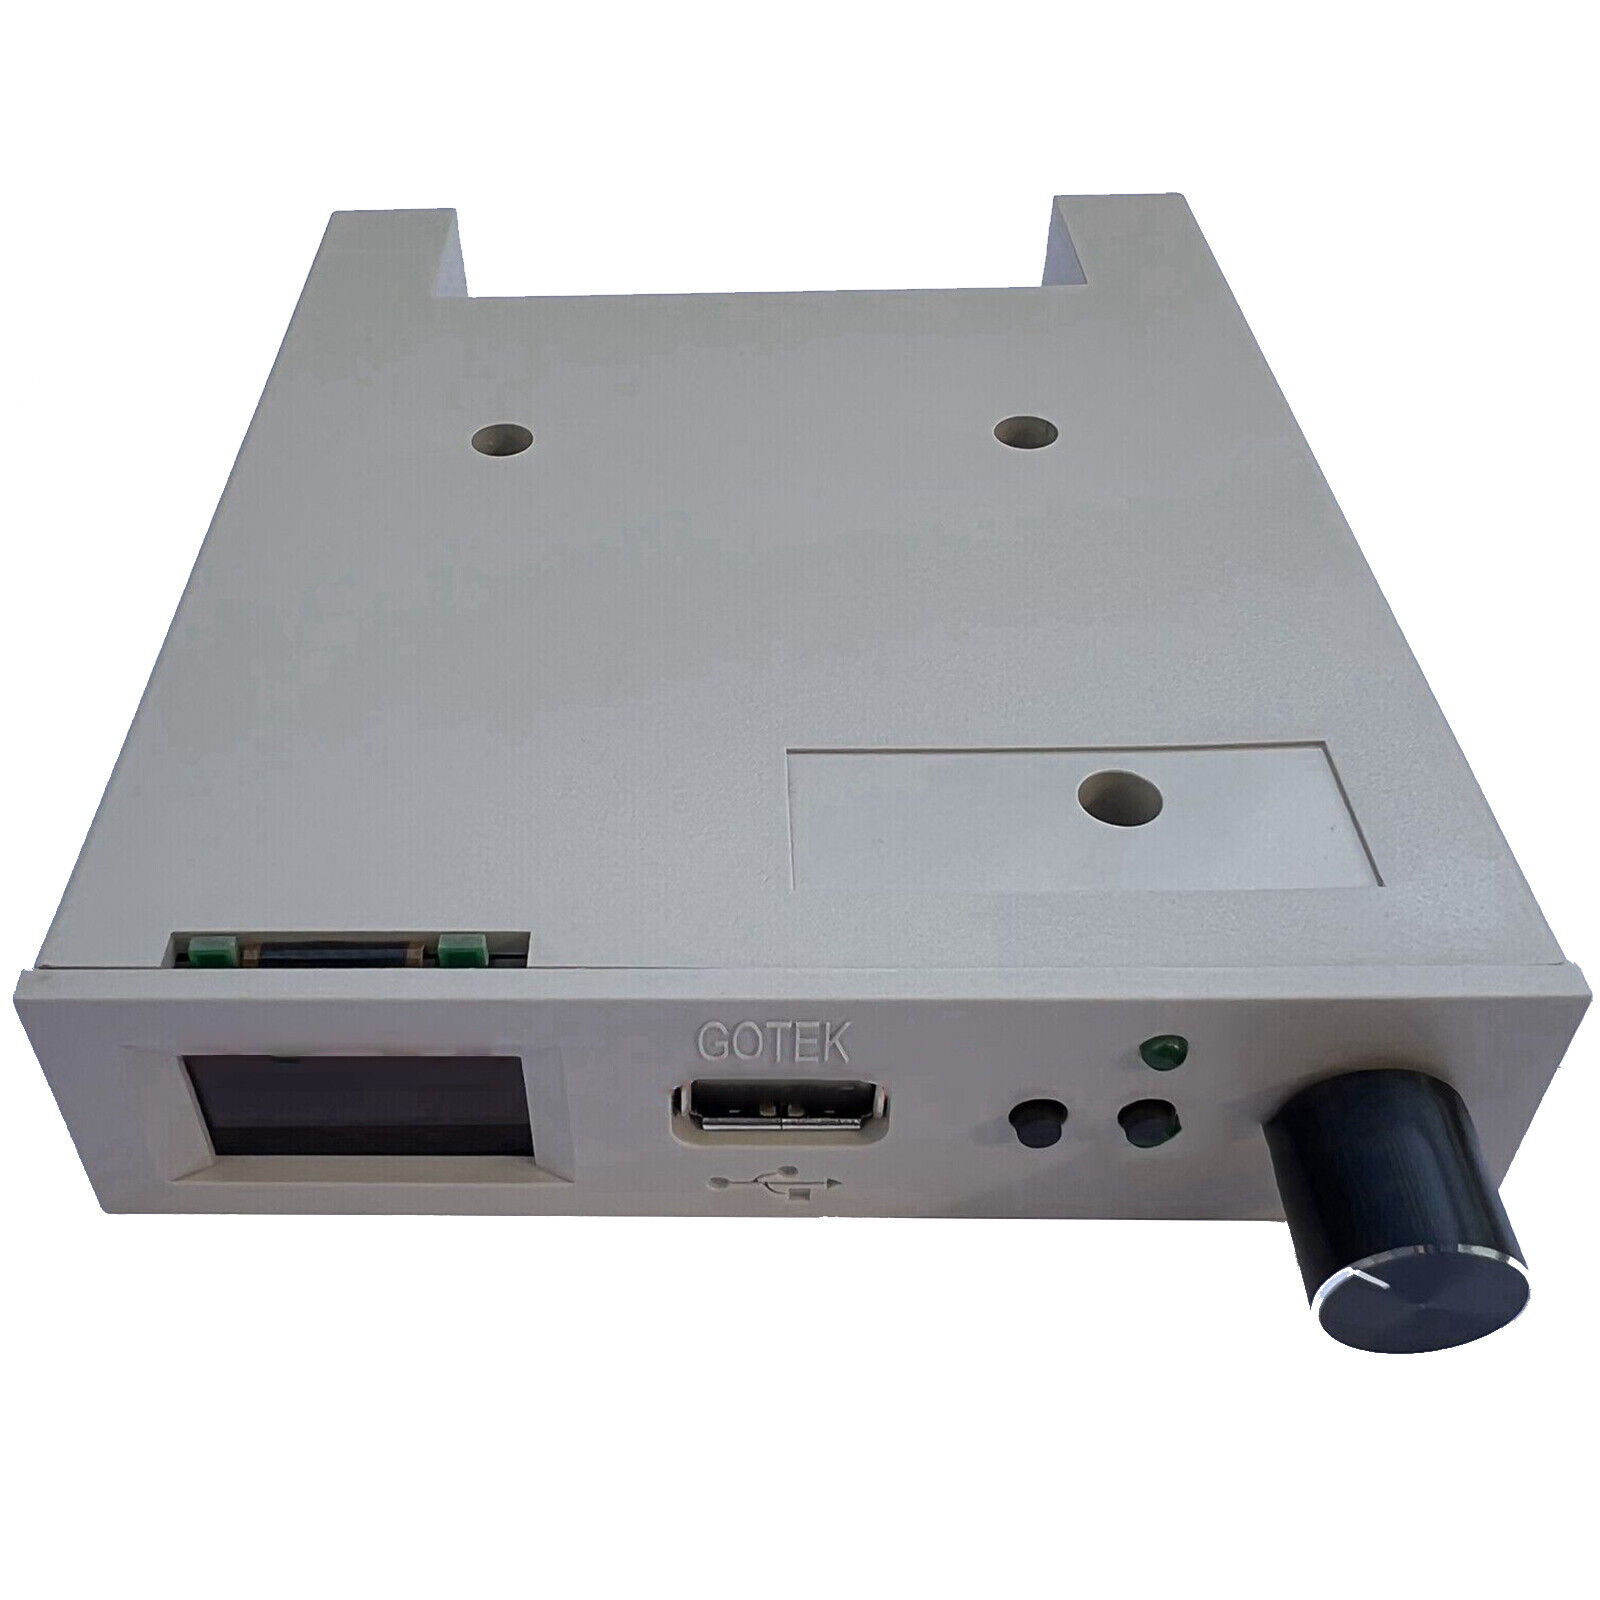 FlashFloppy V3.41 (GOTEK) Floppy emulator AT32F435 SFR1M44 - U100 LQD With OLED